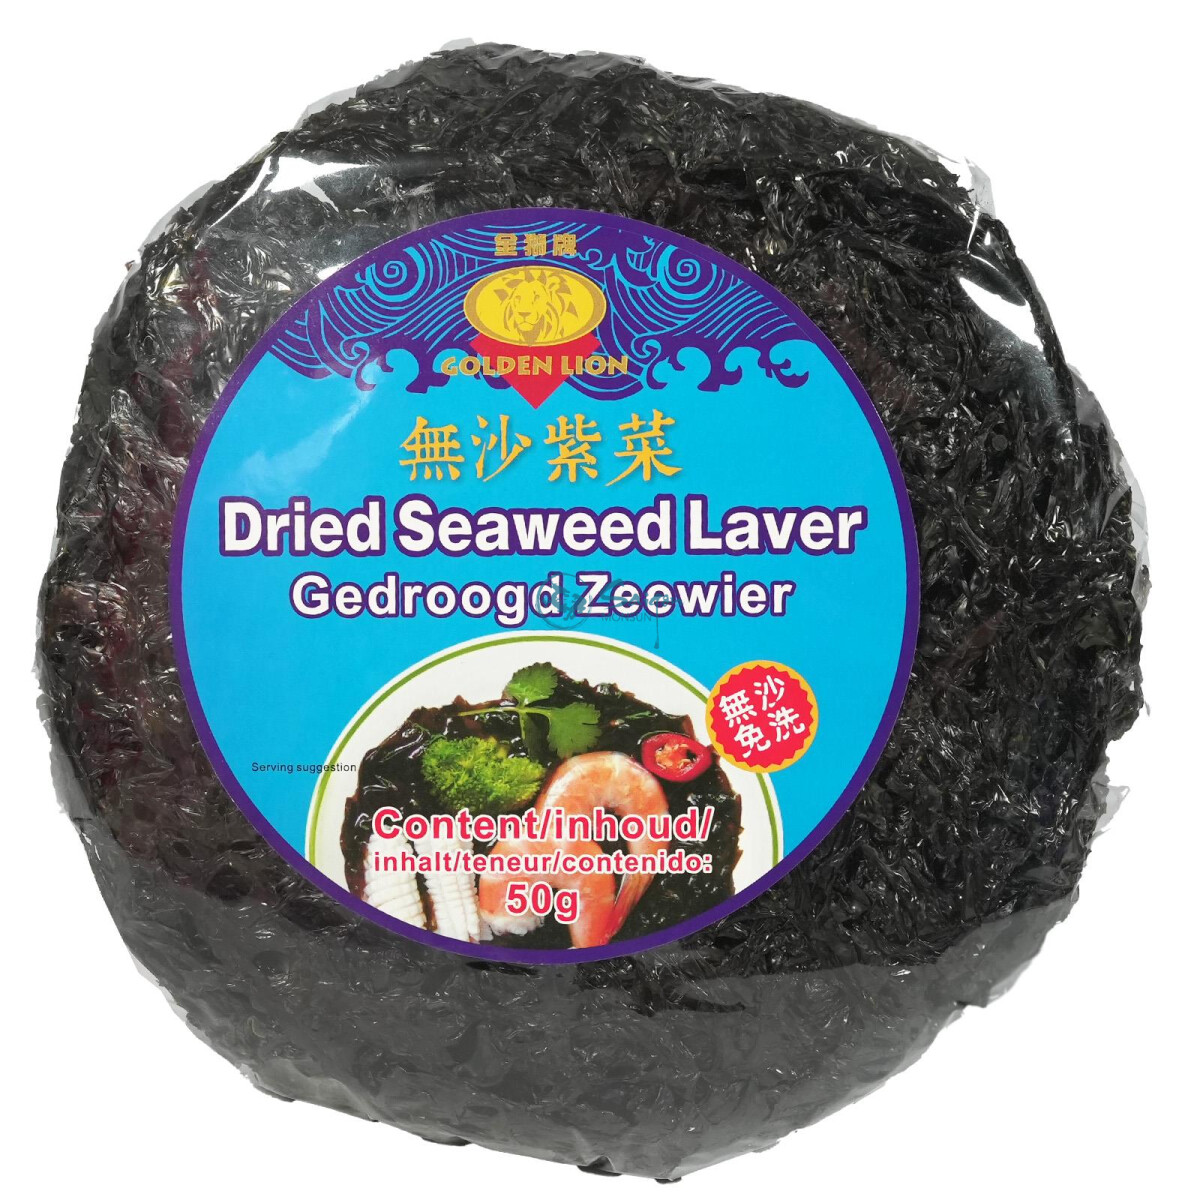 GL Tze Choy Algen Dried Seaweed Laver 50g